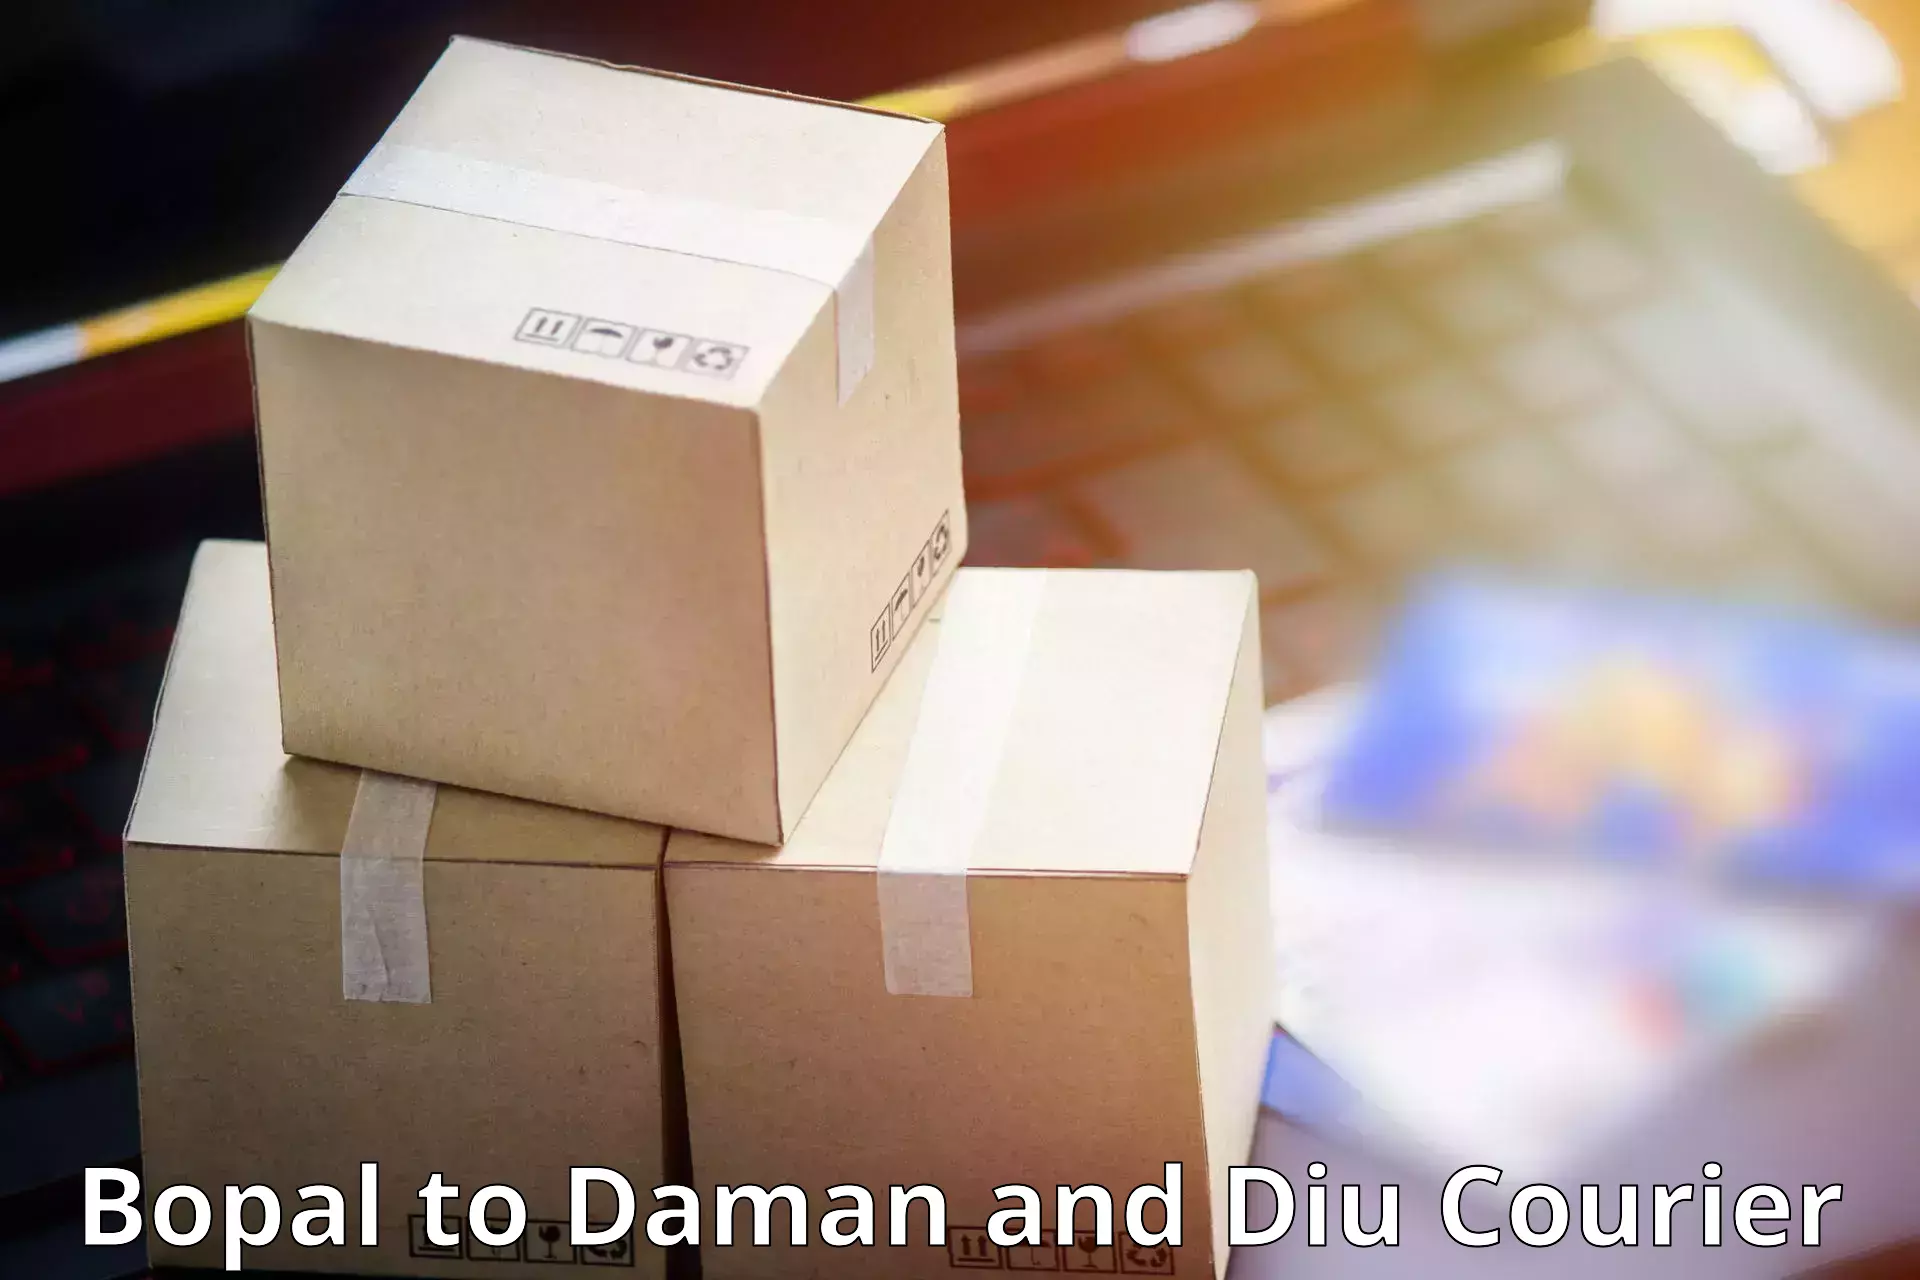 Efficient parcel service Bopal to Diu